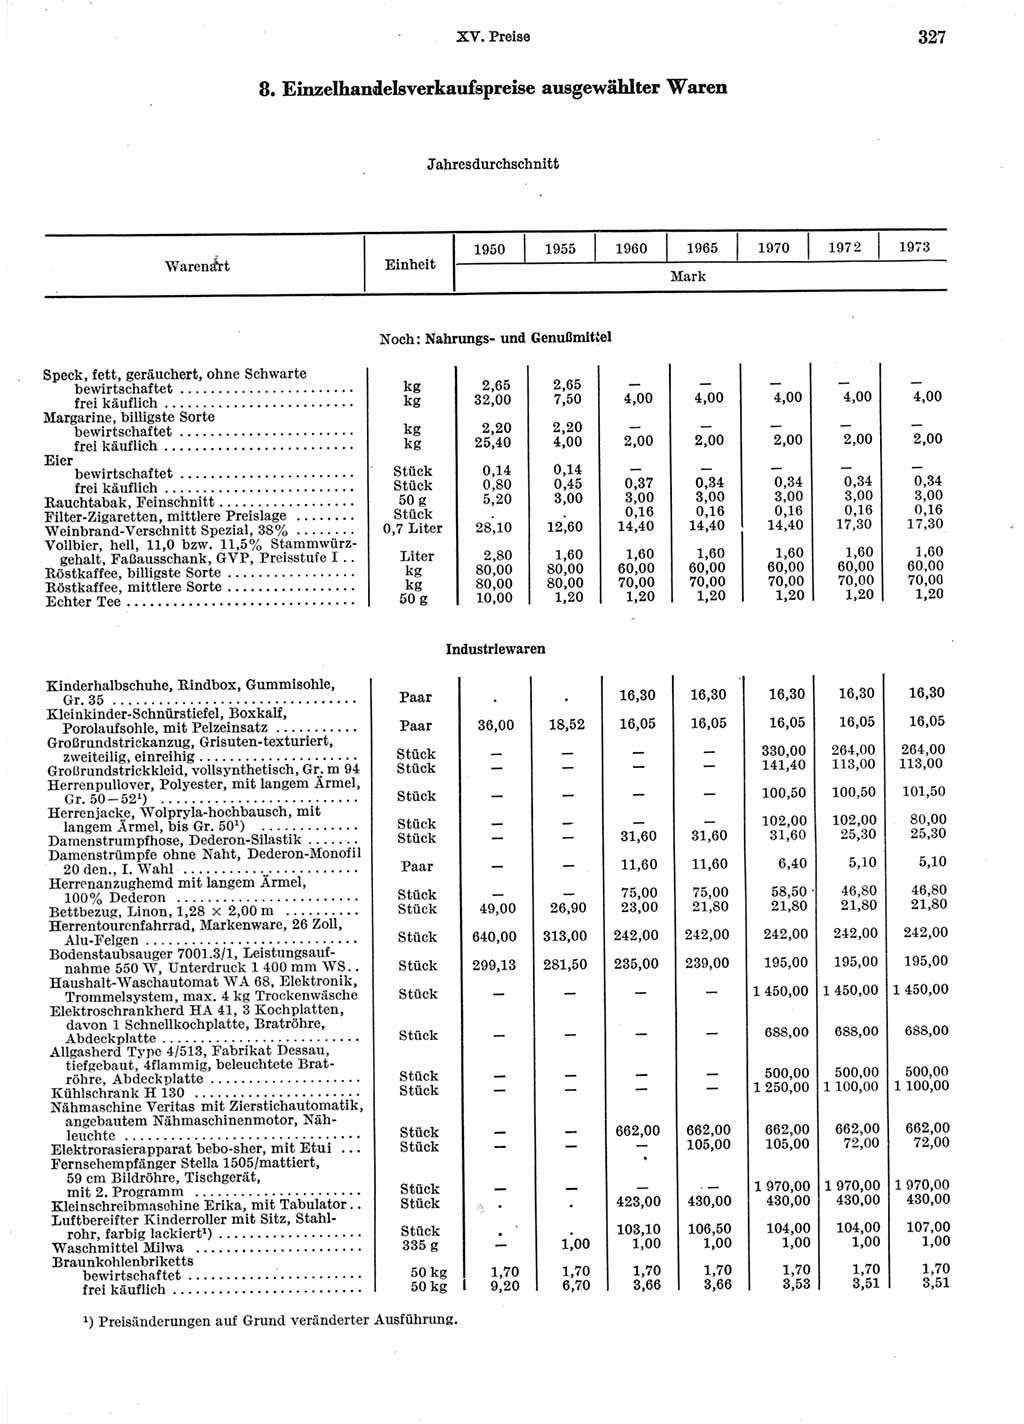 Statistisches Jahrbuch der Deutschen Demokratischen Republik (DDR) 1974, Seite 327 (Stat. Jb. DDR 1974, S. 327)